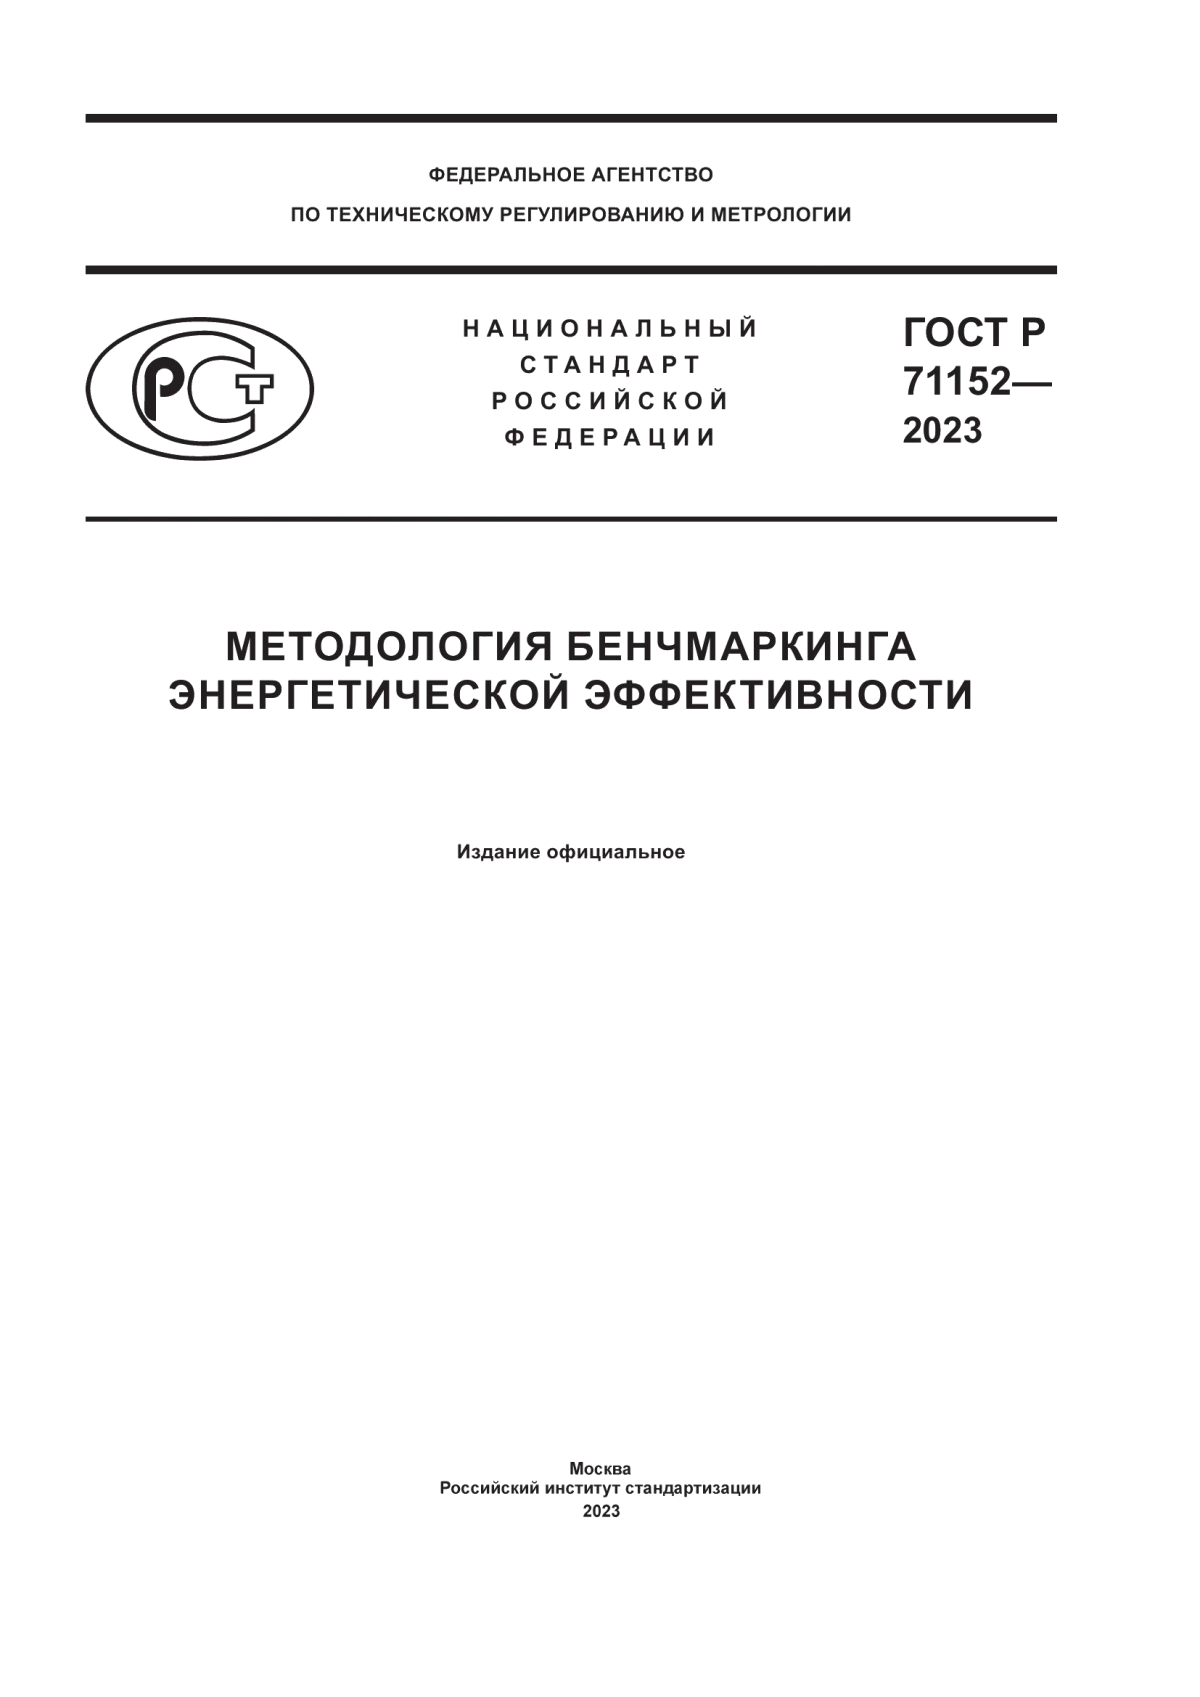 ГОСТ Р 71152-2023 Методология бенчмаркинга энергетической эффективности